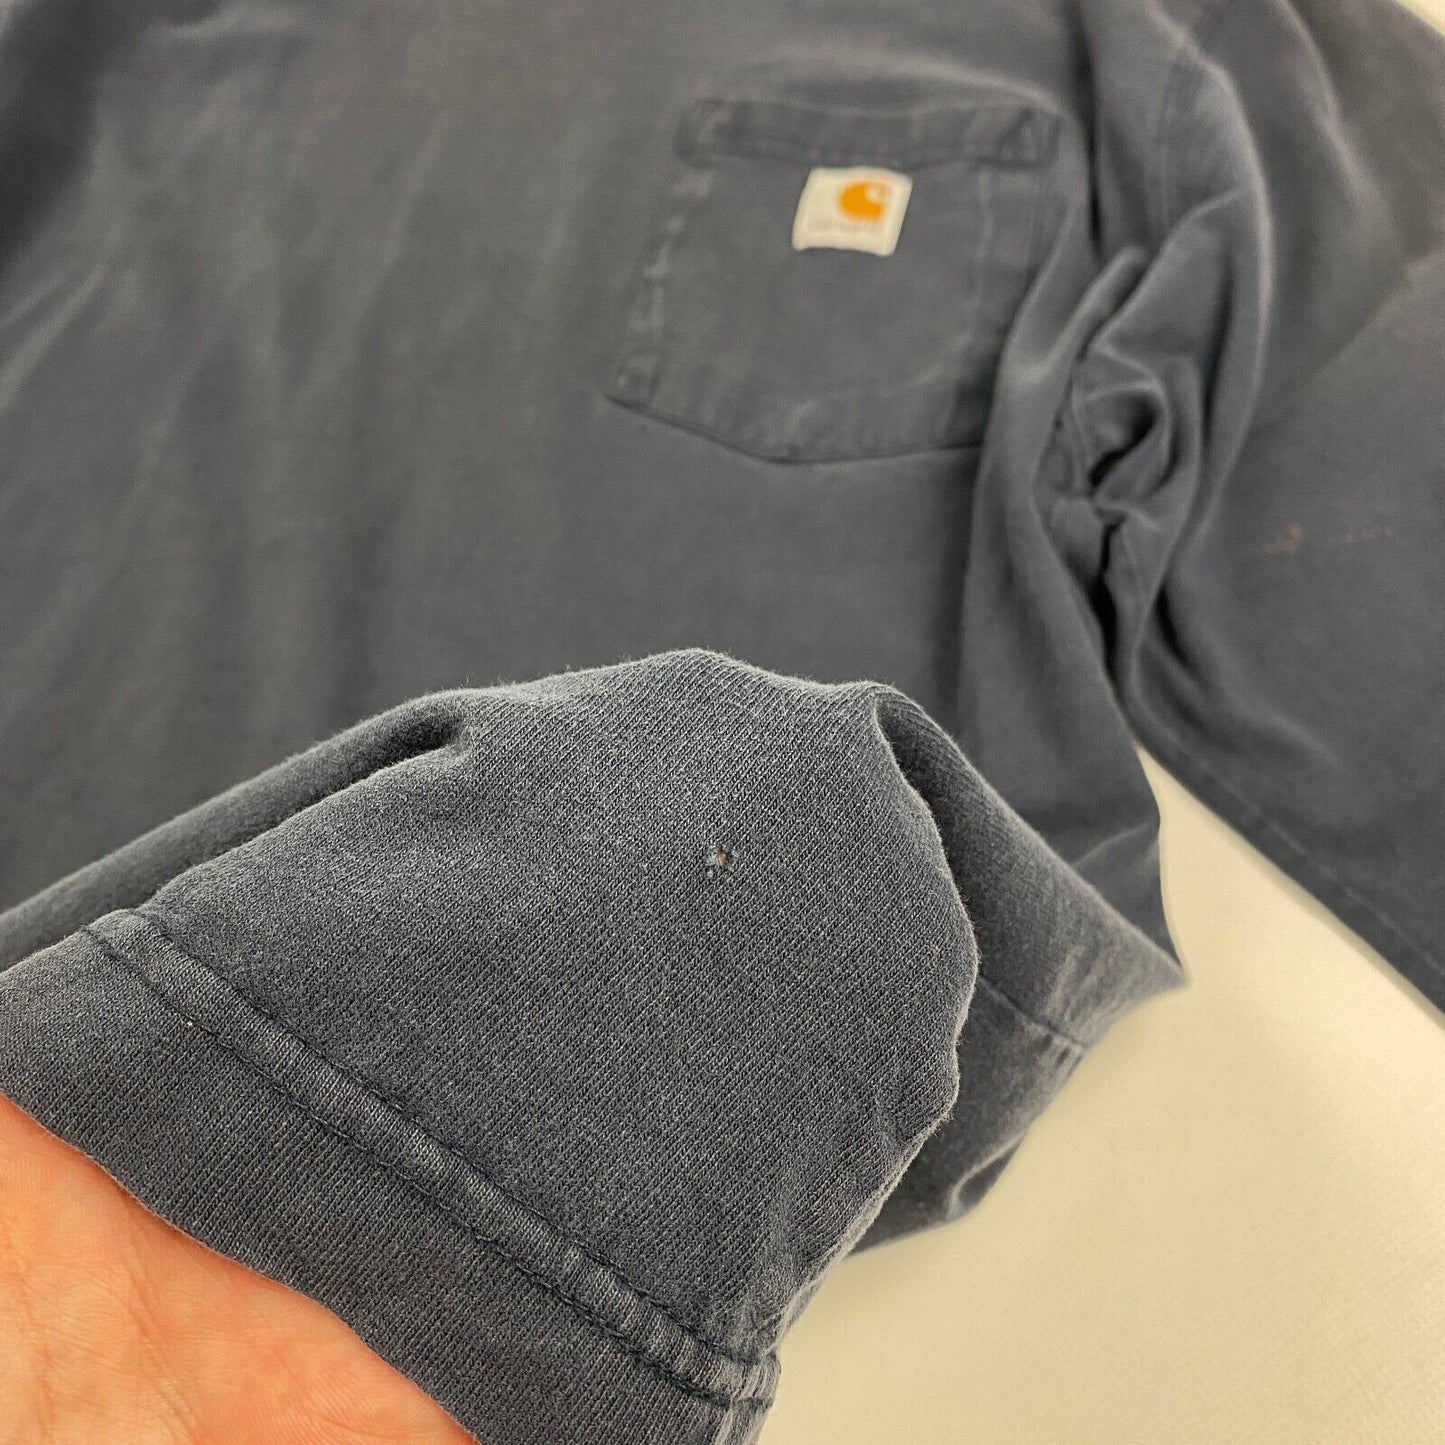 VINTAGE Carhartt Navy Sm Logo Pocket Long Sleeve T-Shirt sz Large Men